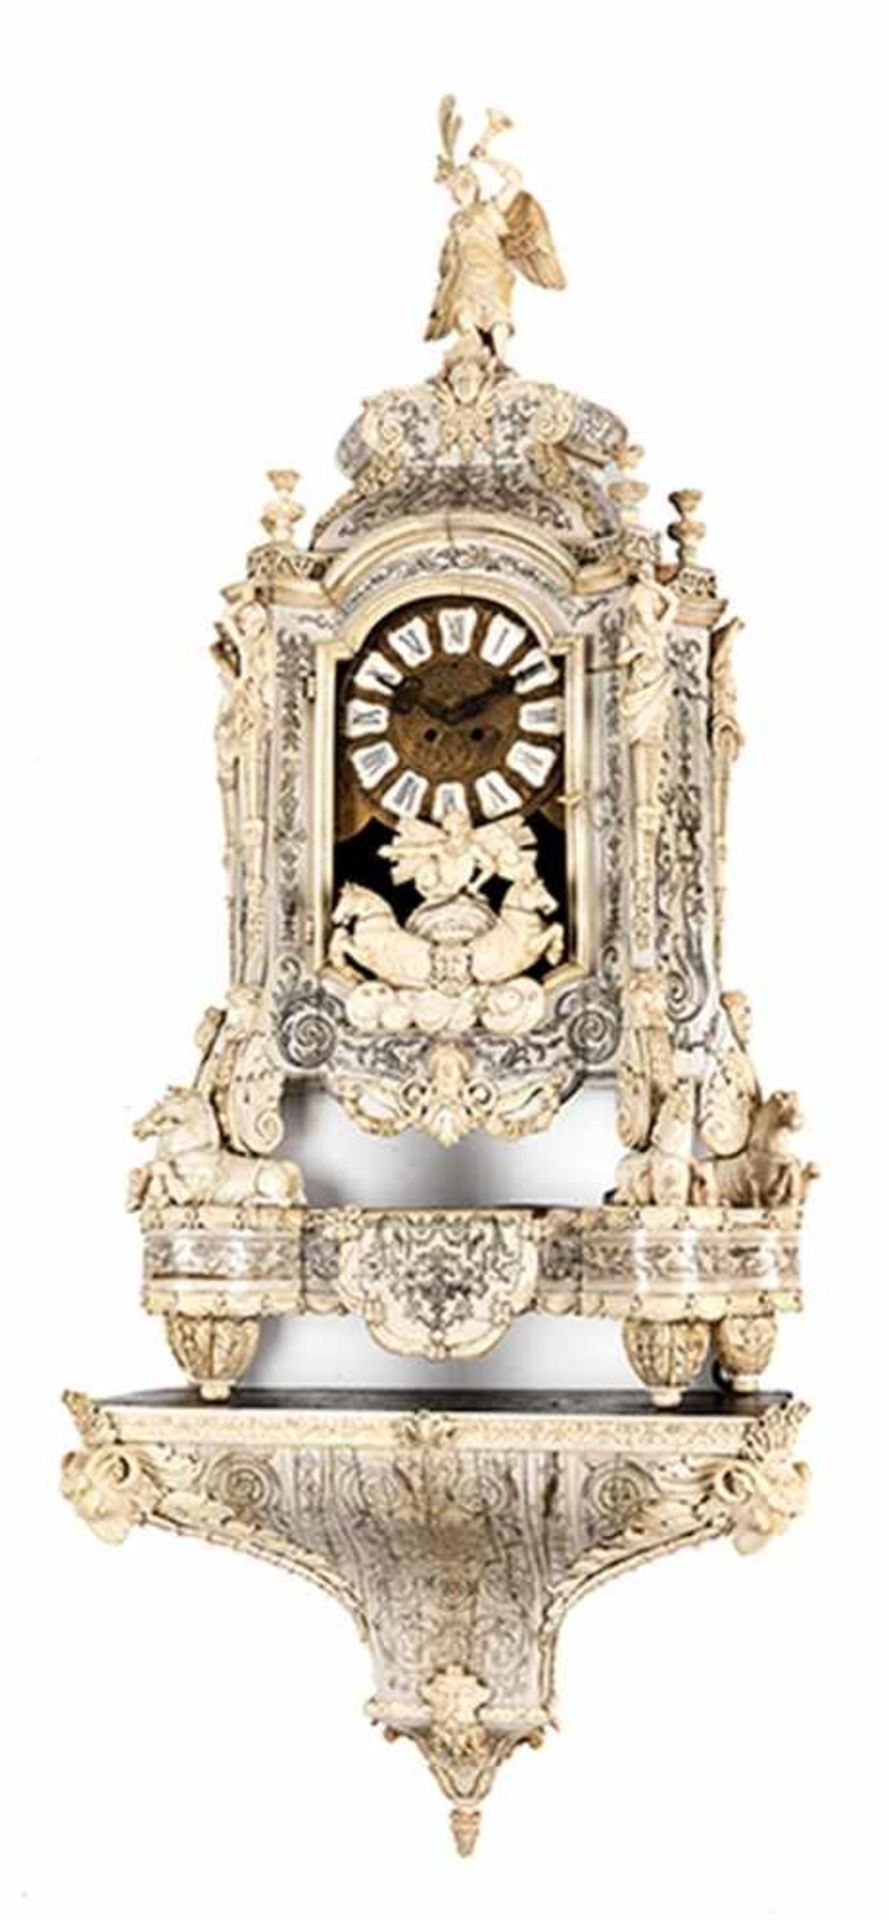 Aufwendig gearbeitete Louis XIV-Uhr in Elfenbein Gesamthöhe: ca. 153 cm. 19. Jahrhundert. - Bild 11 aus 21